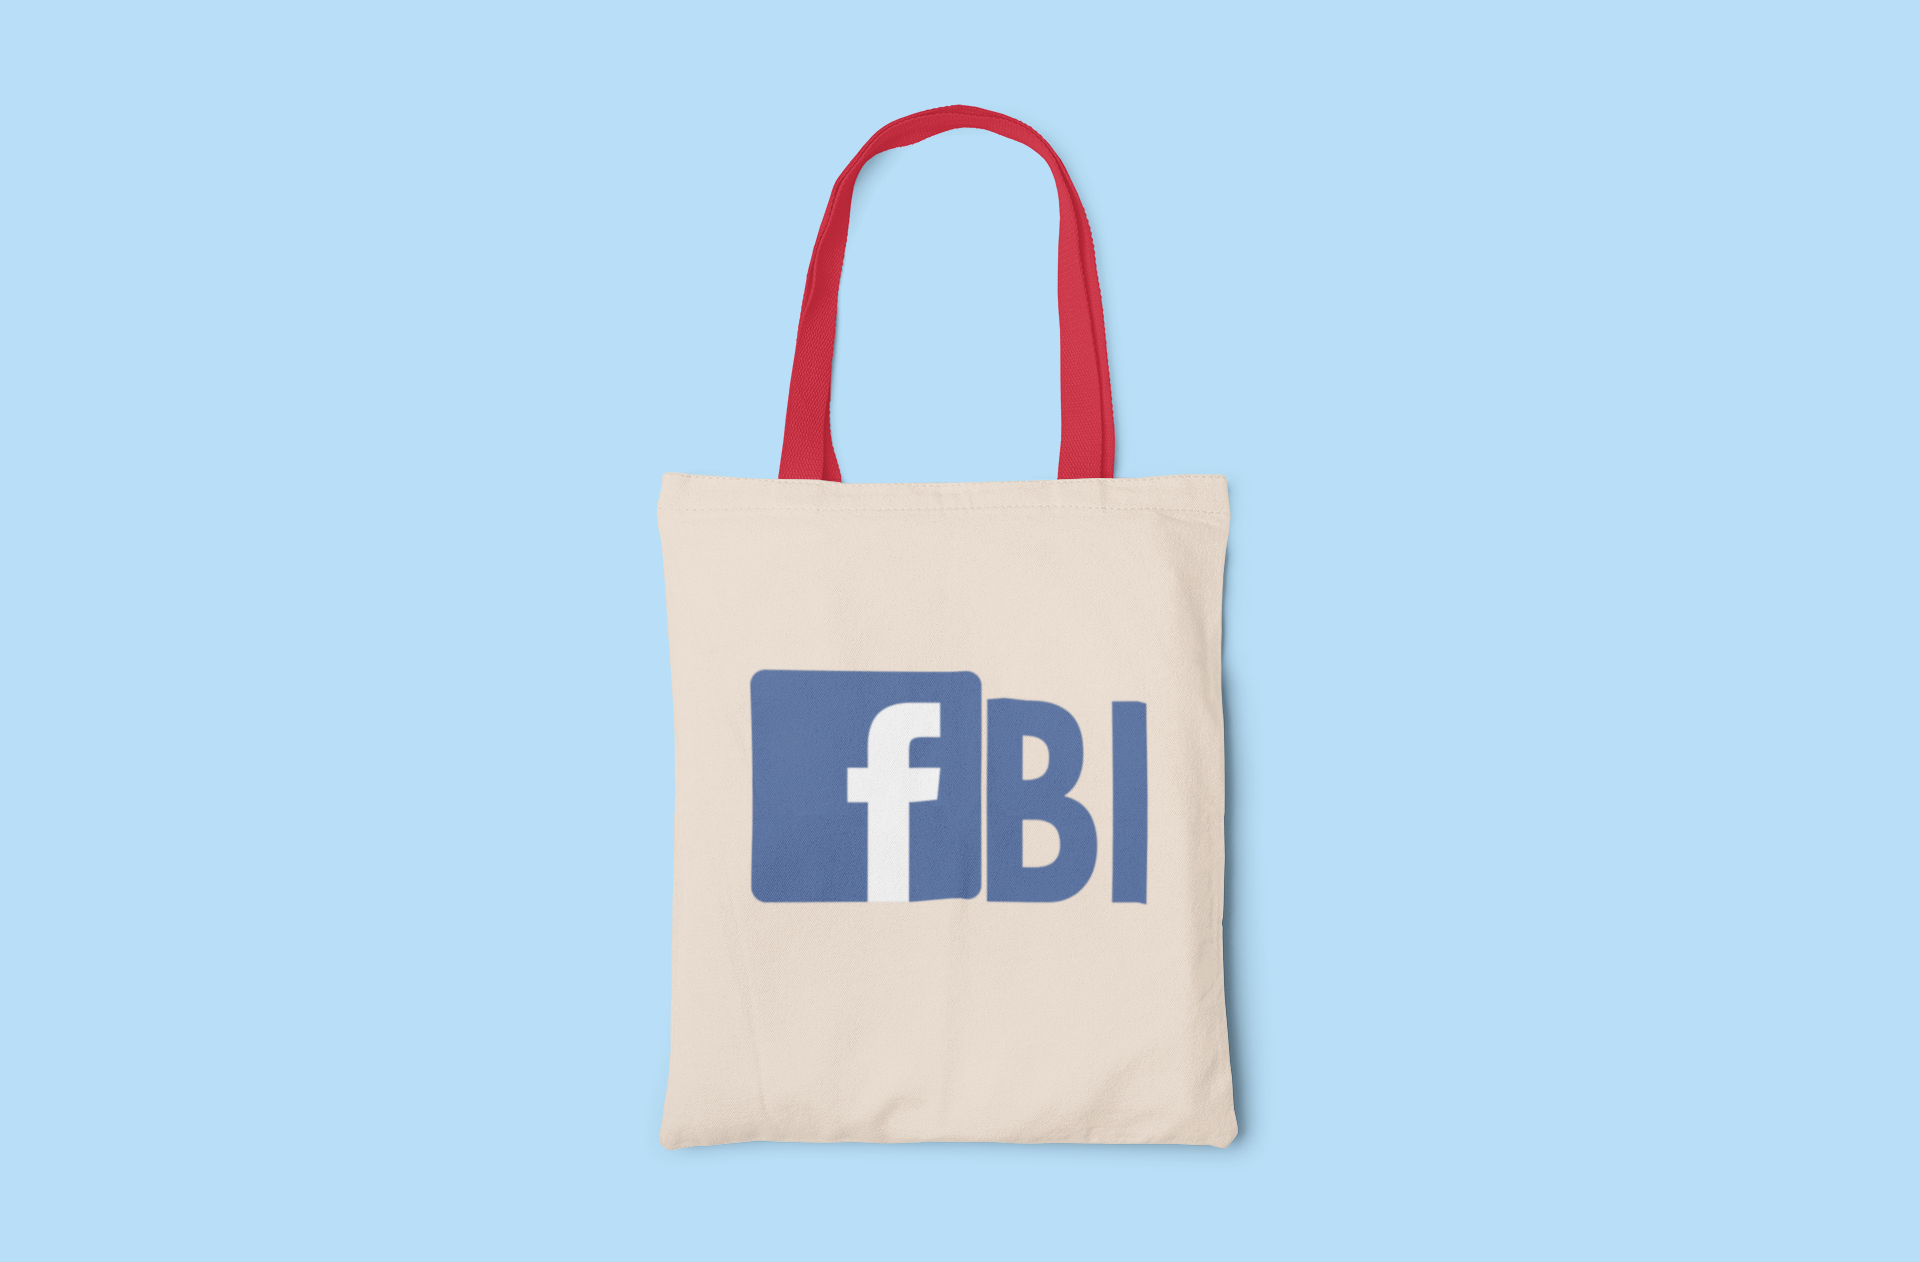 FB/FBI Tote Bag